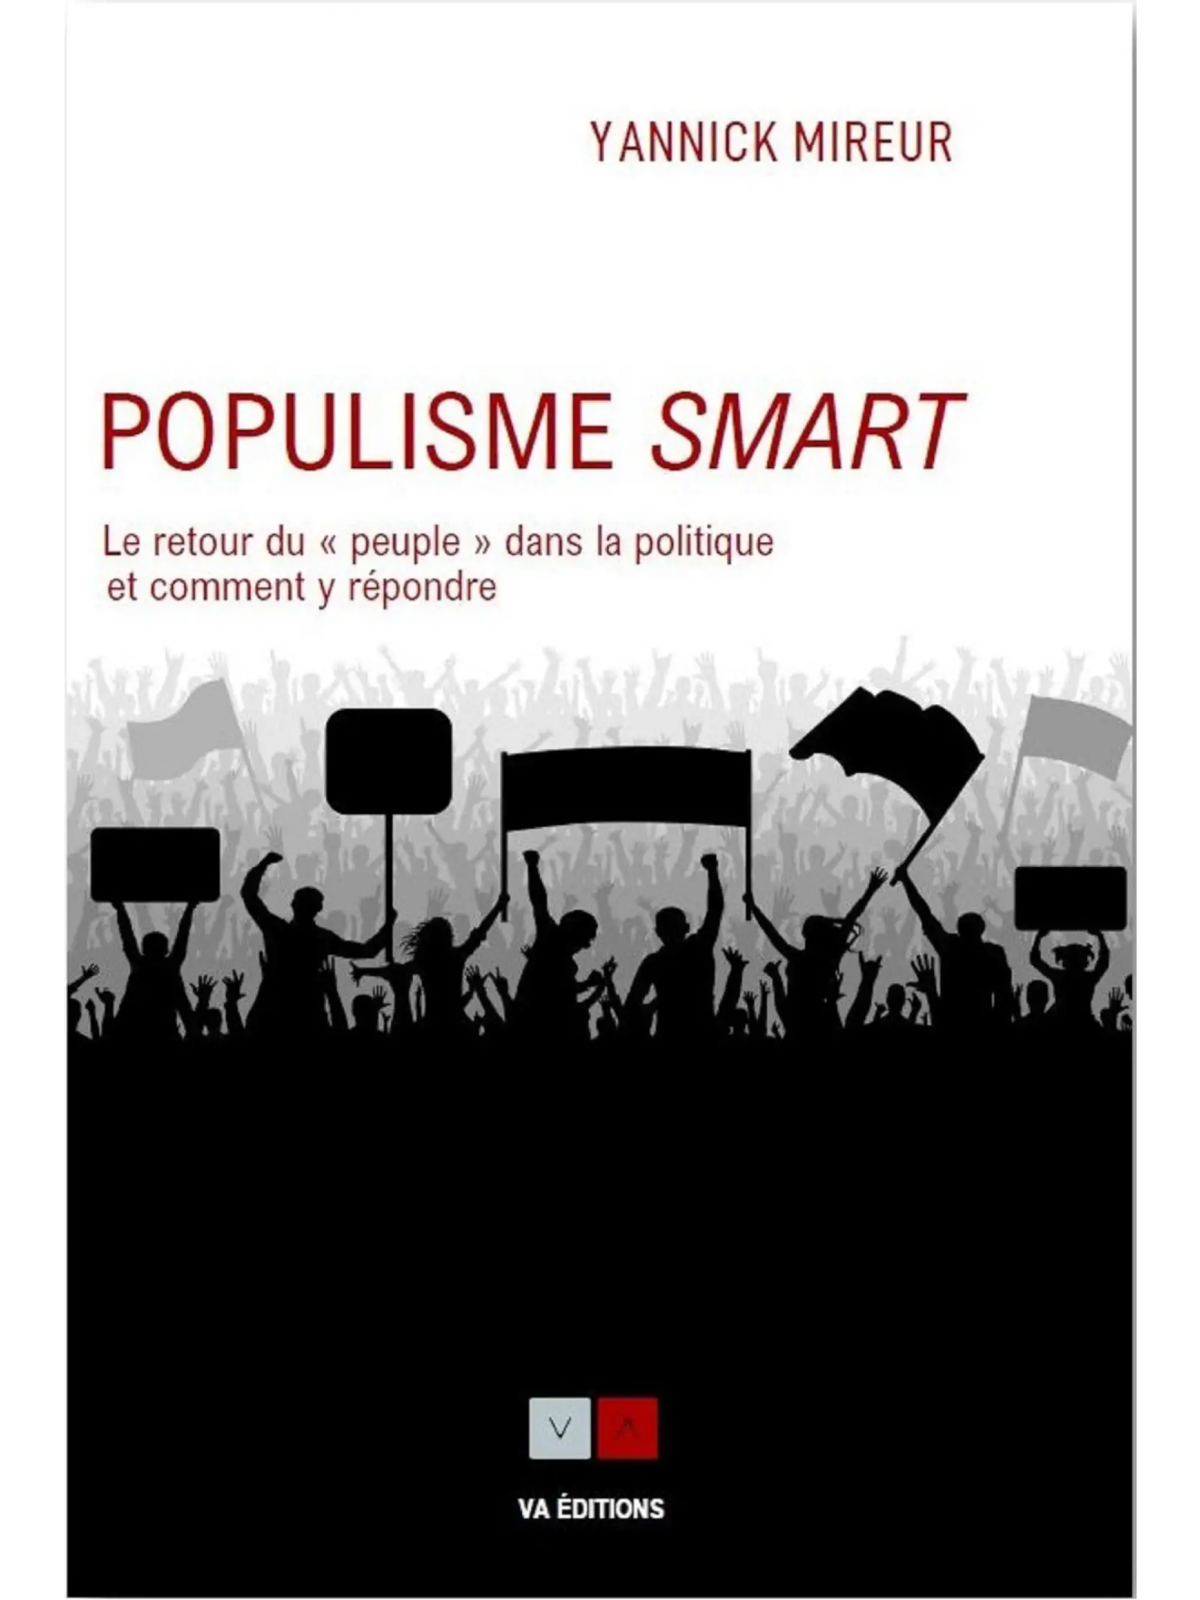 Yannick Mireur : Populisme smart